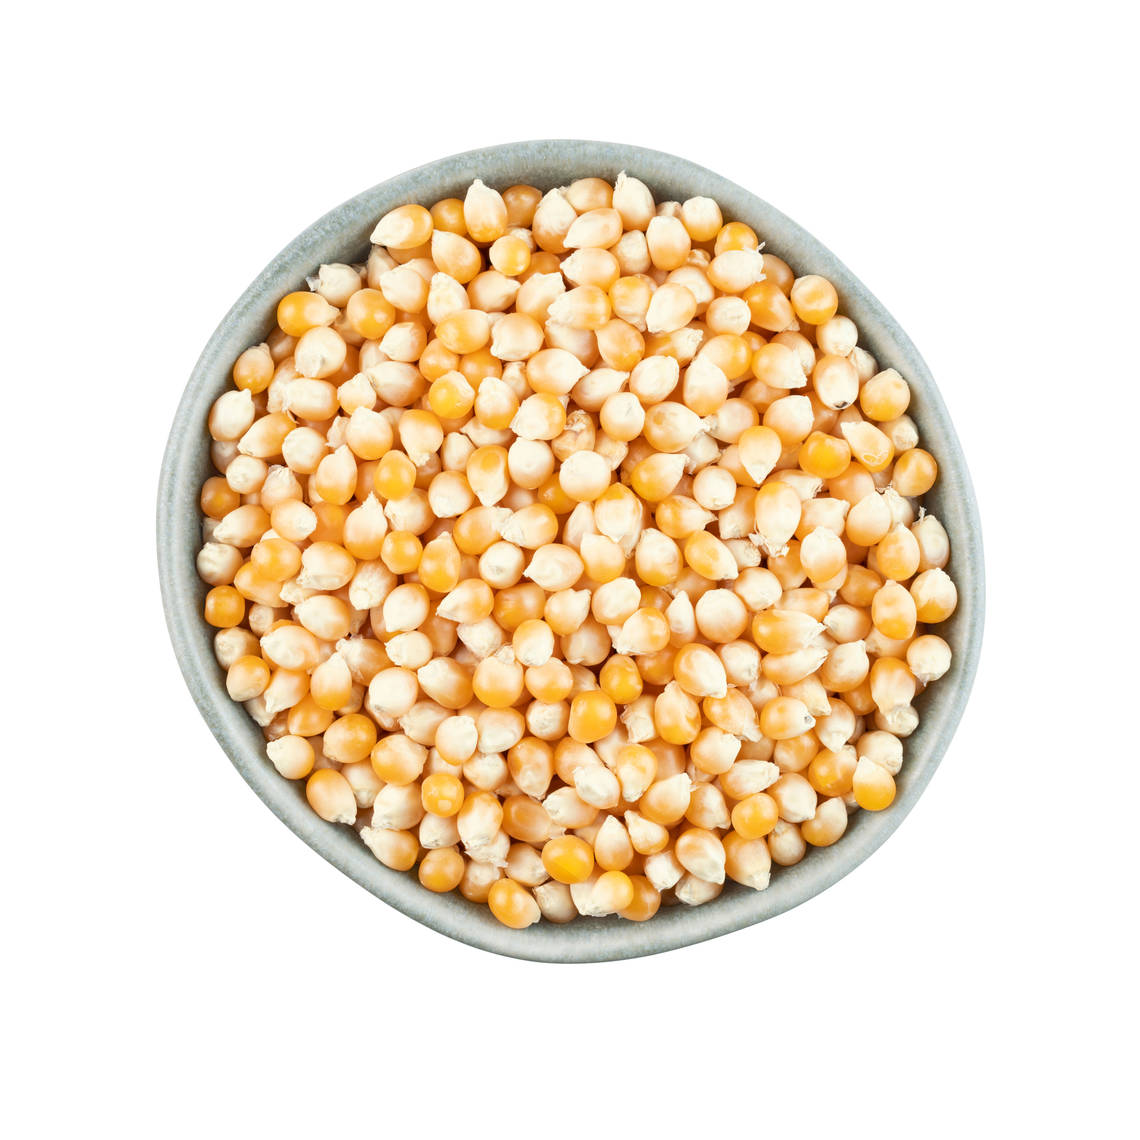 Las palomitas de maíz son un tipo específico de maíz duro que se cultiva especialmente para la elaboración de palomitas.